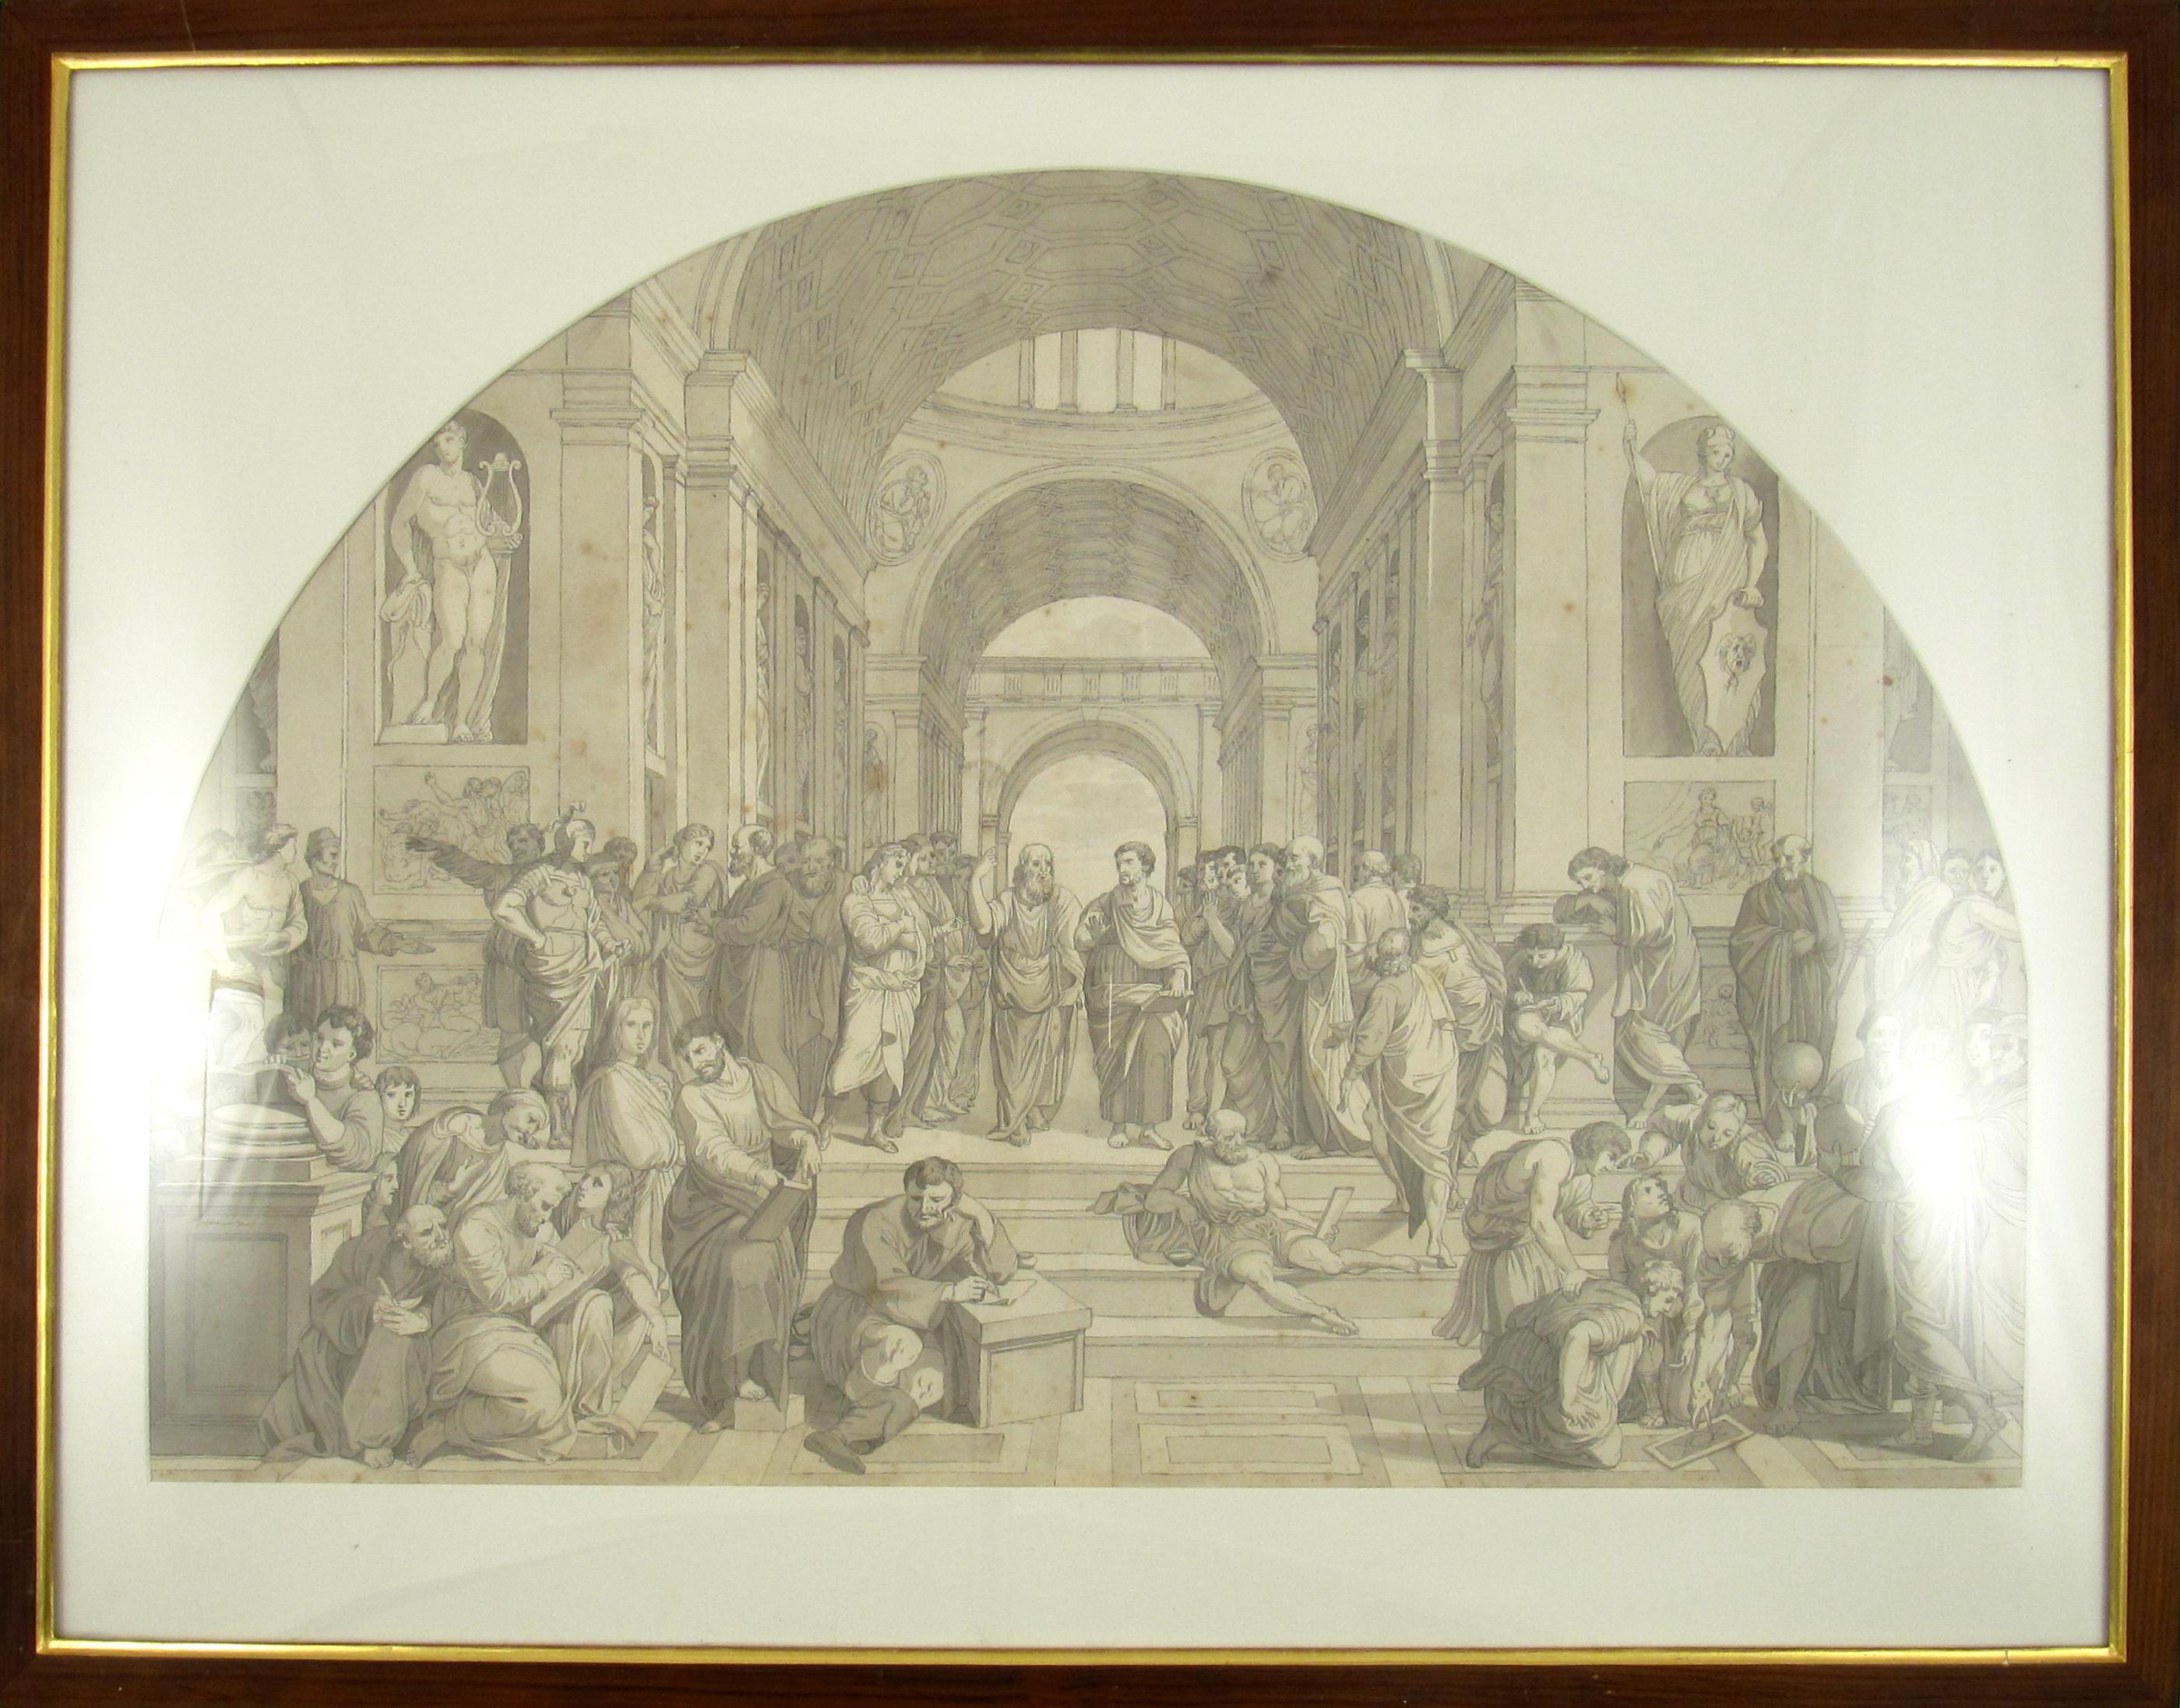 Schule von Athen nach Raphael, Vatikanische Tuschewaschungszeichnung des 18. Jahrhunderts, um 1780, Schule von Athen